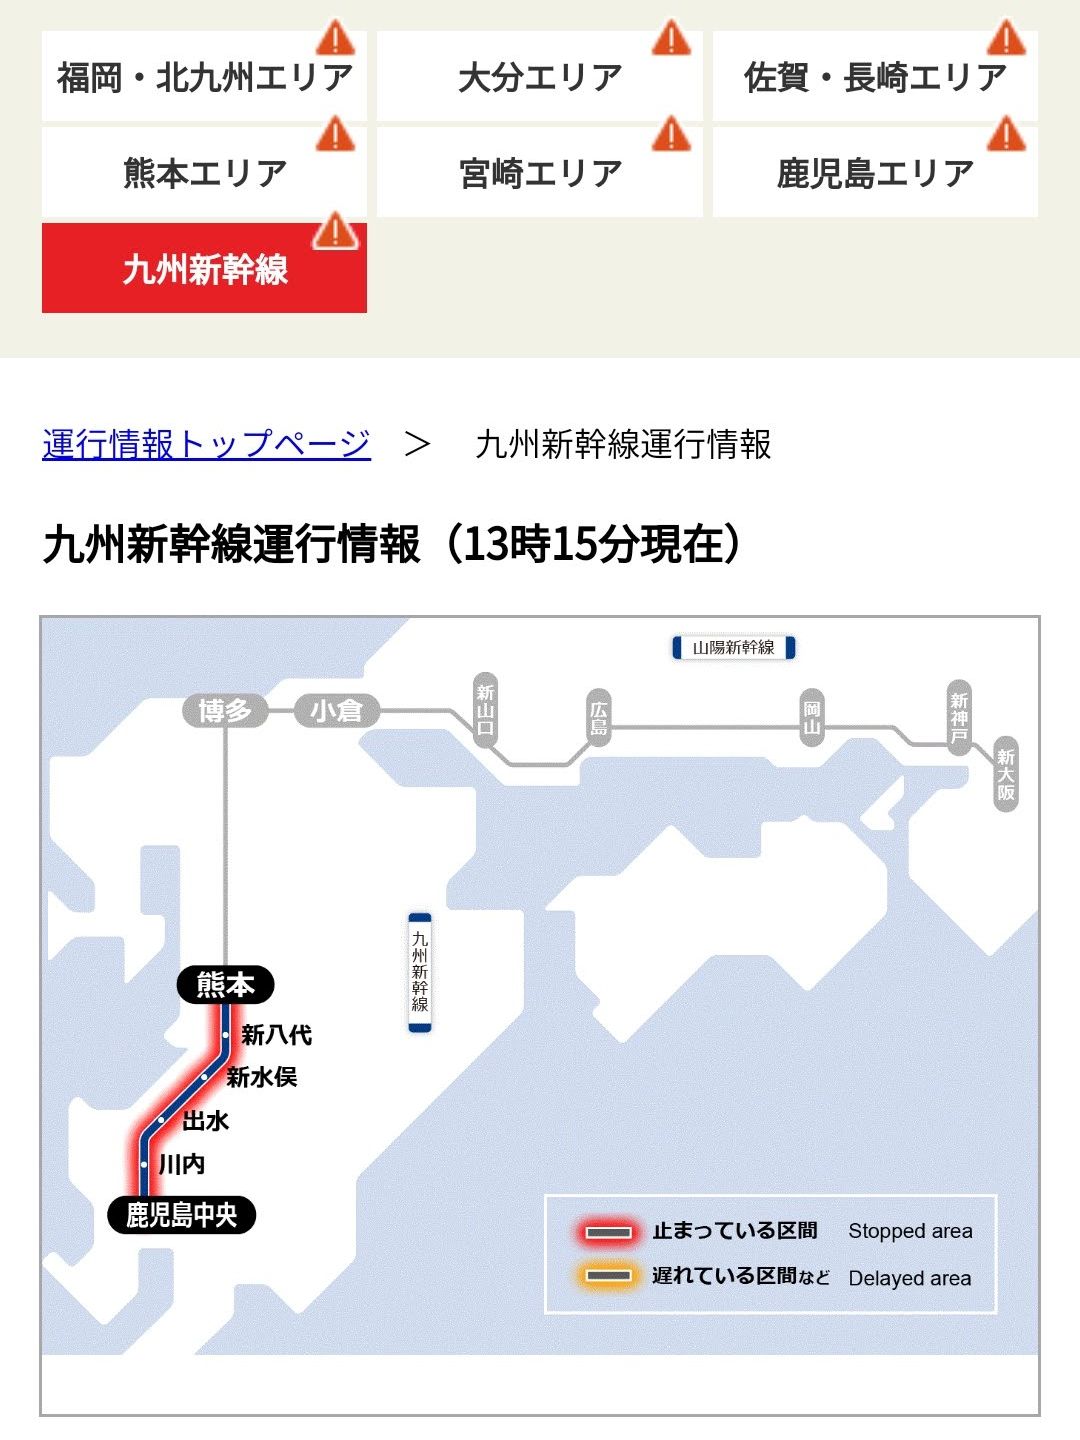 九州新幹線運行情報